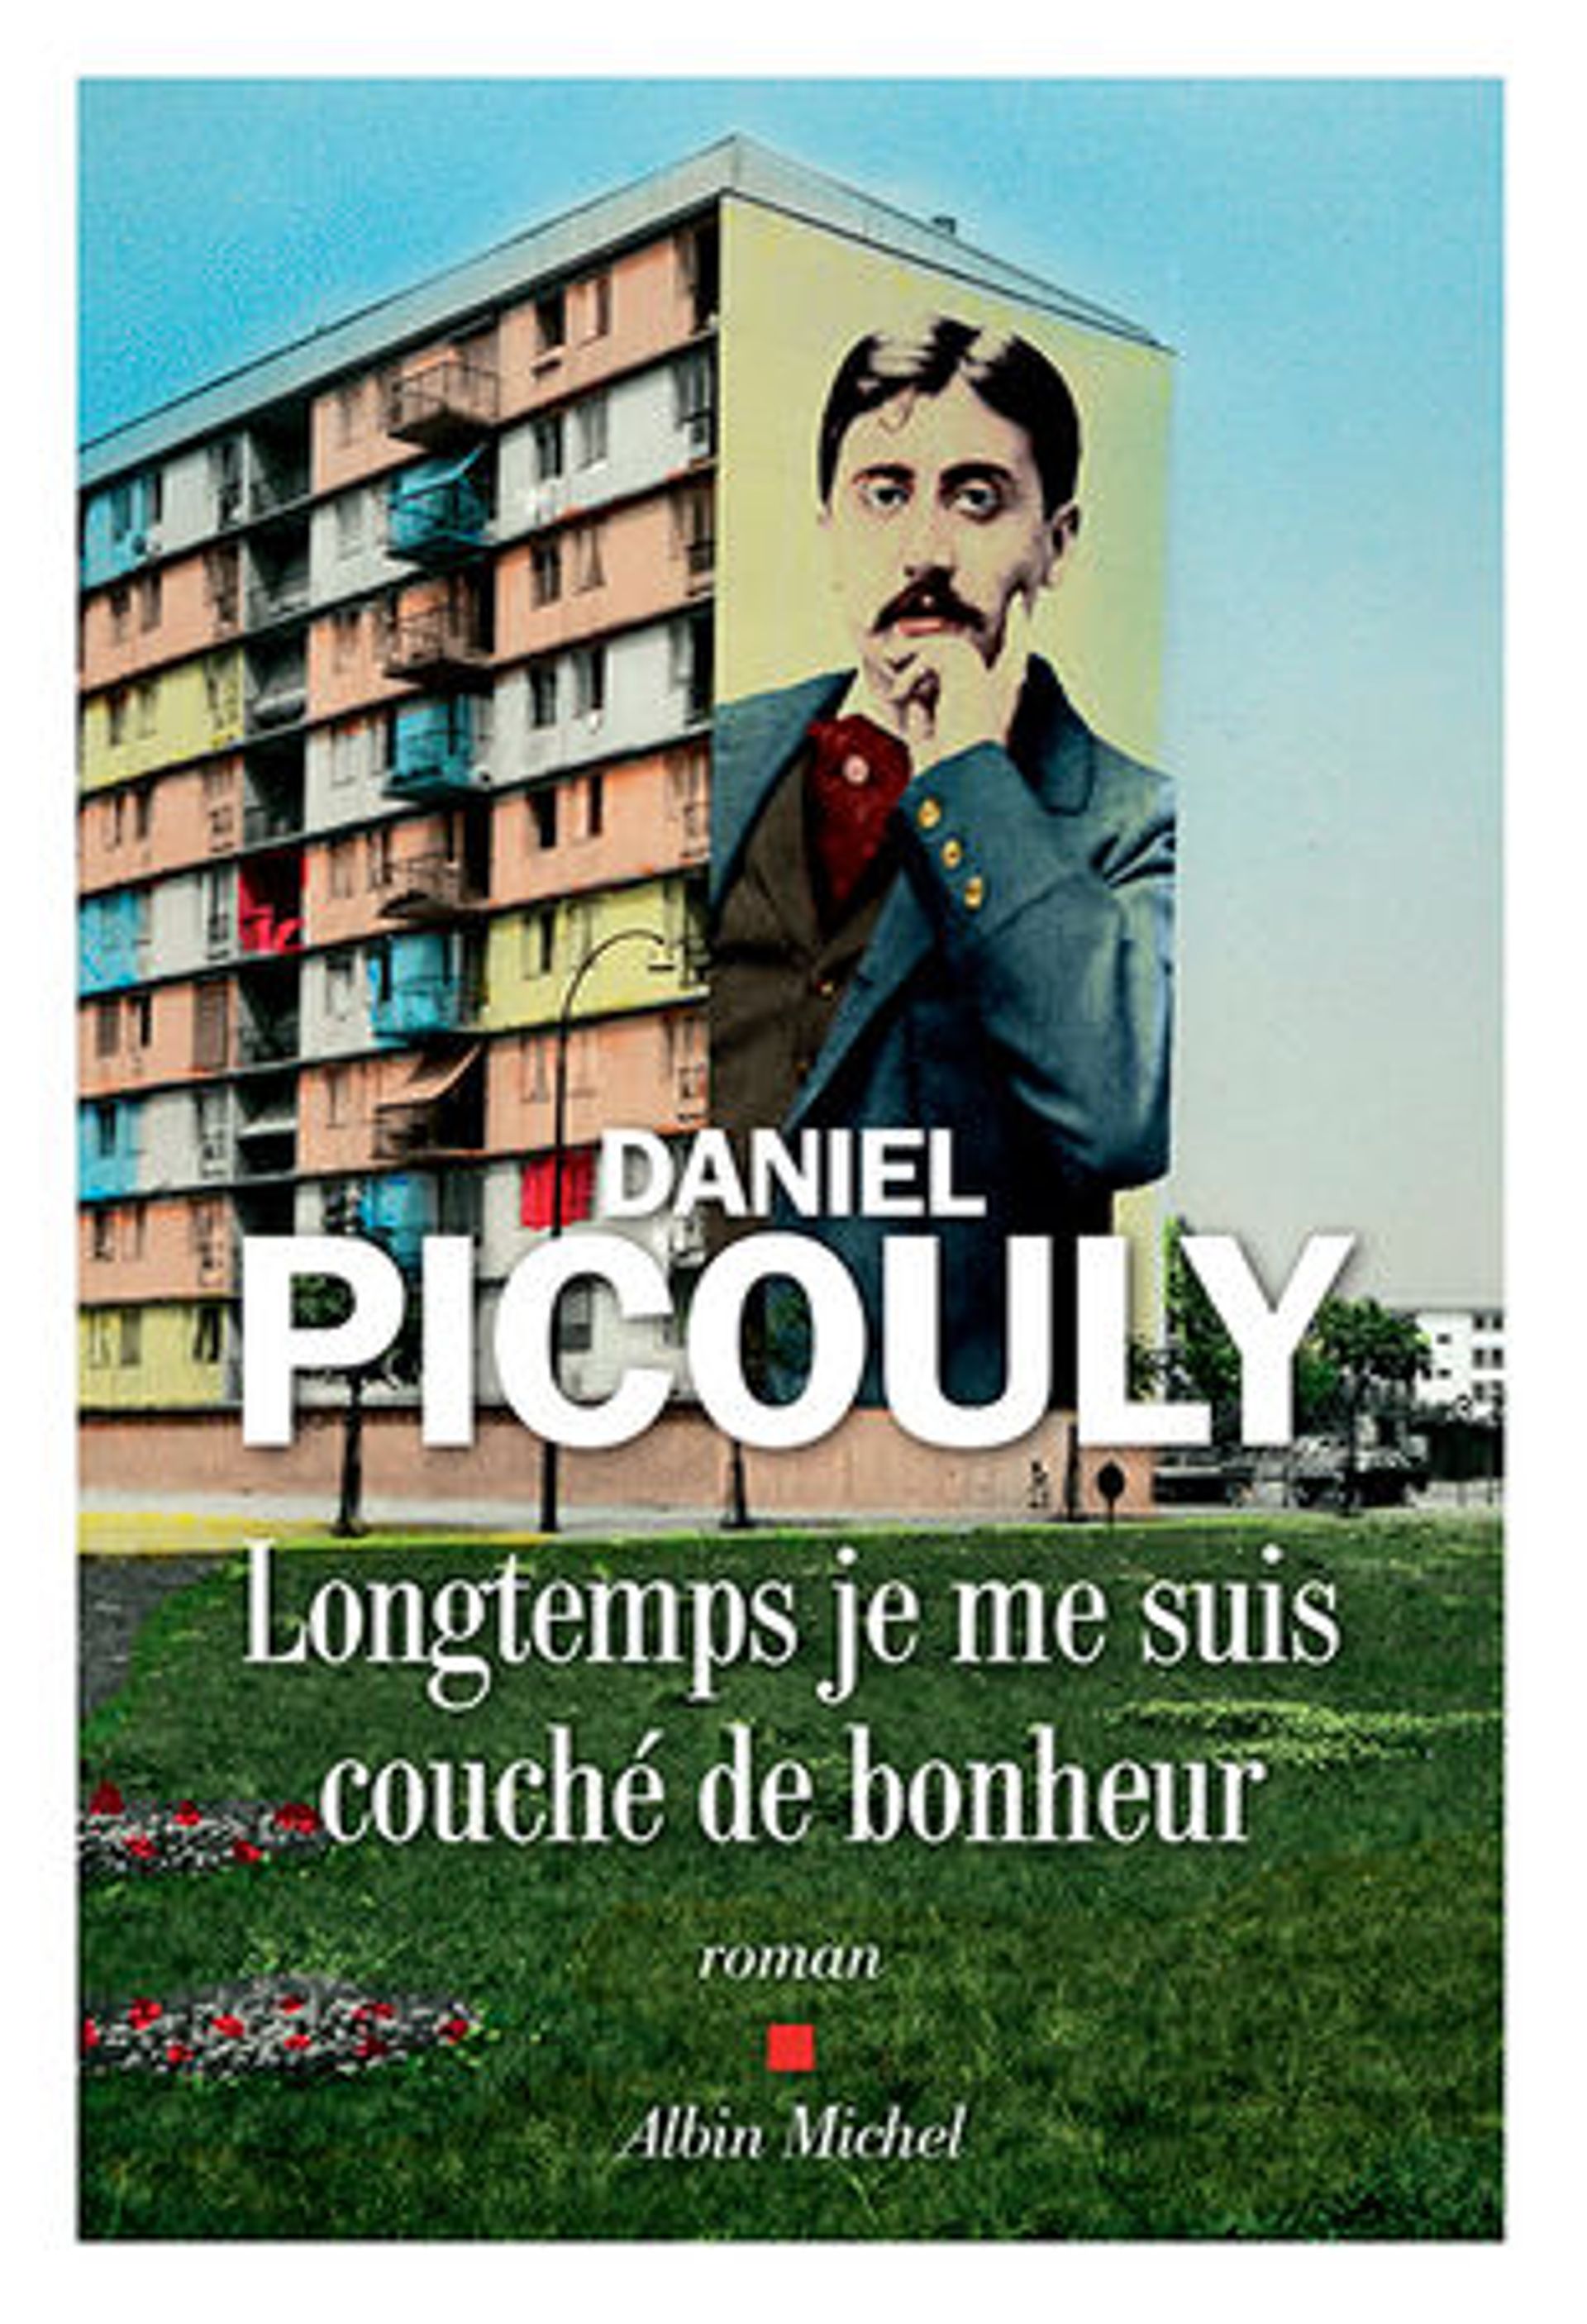 Daniel Picouly, l'auteur qui fait renaître Proust : "Aujourd'hui, il appartient à tout le monde"